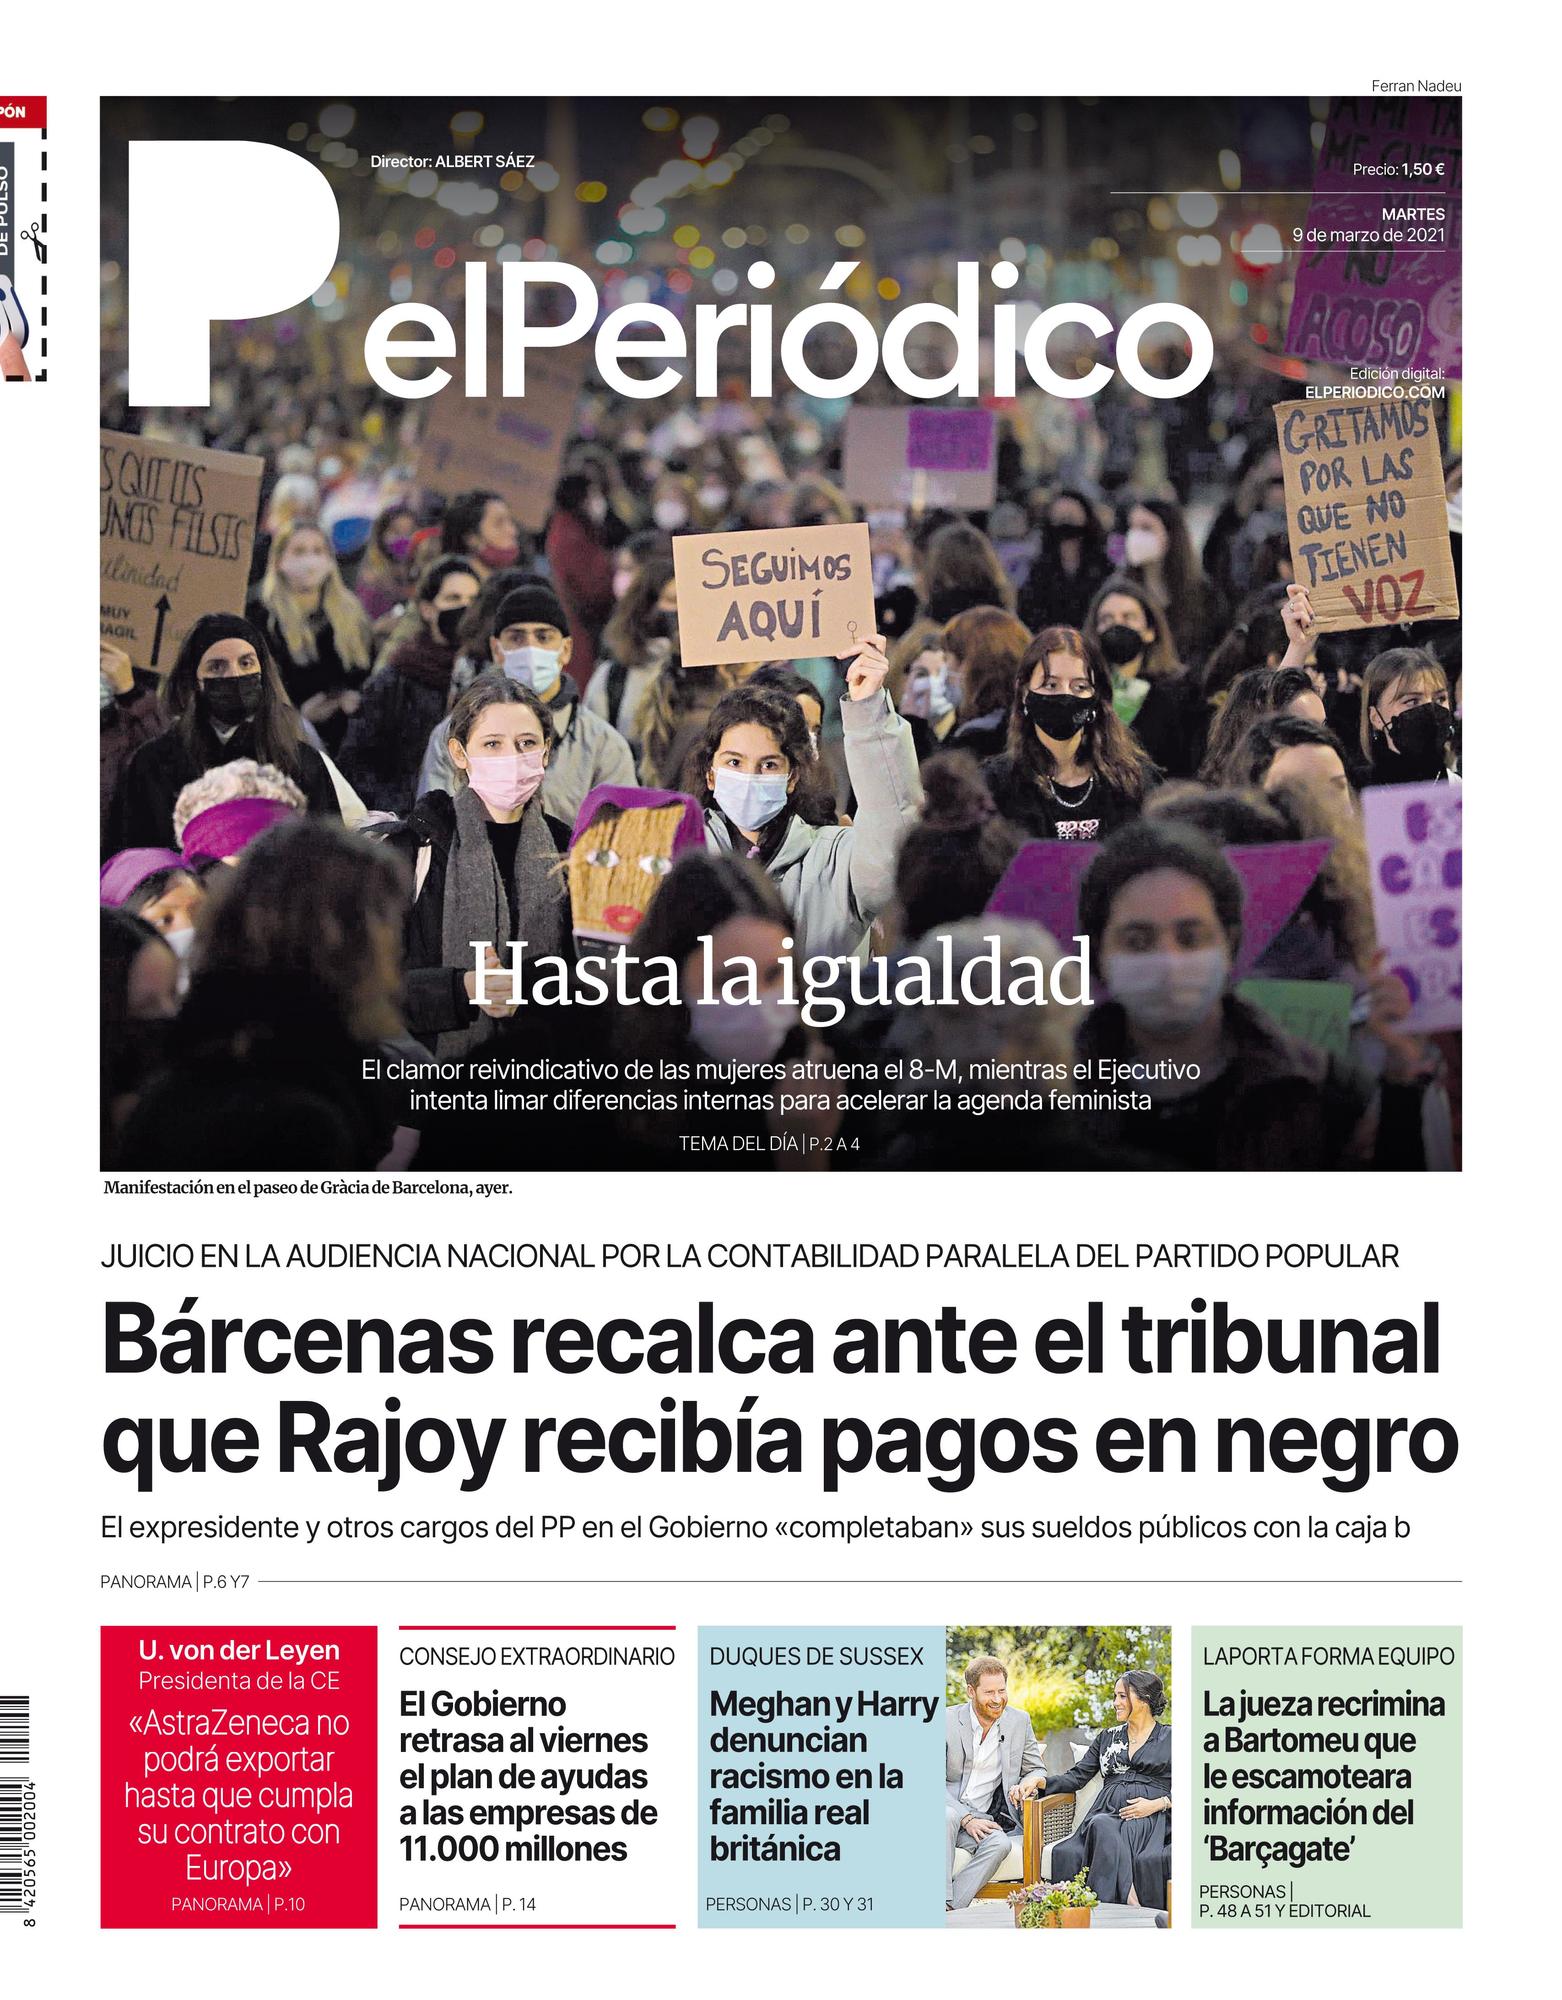 La portada de EL PERIÓDICO del martes 9 de marzo de 2021